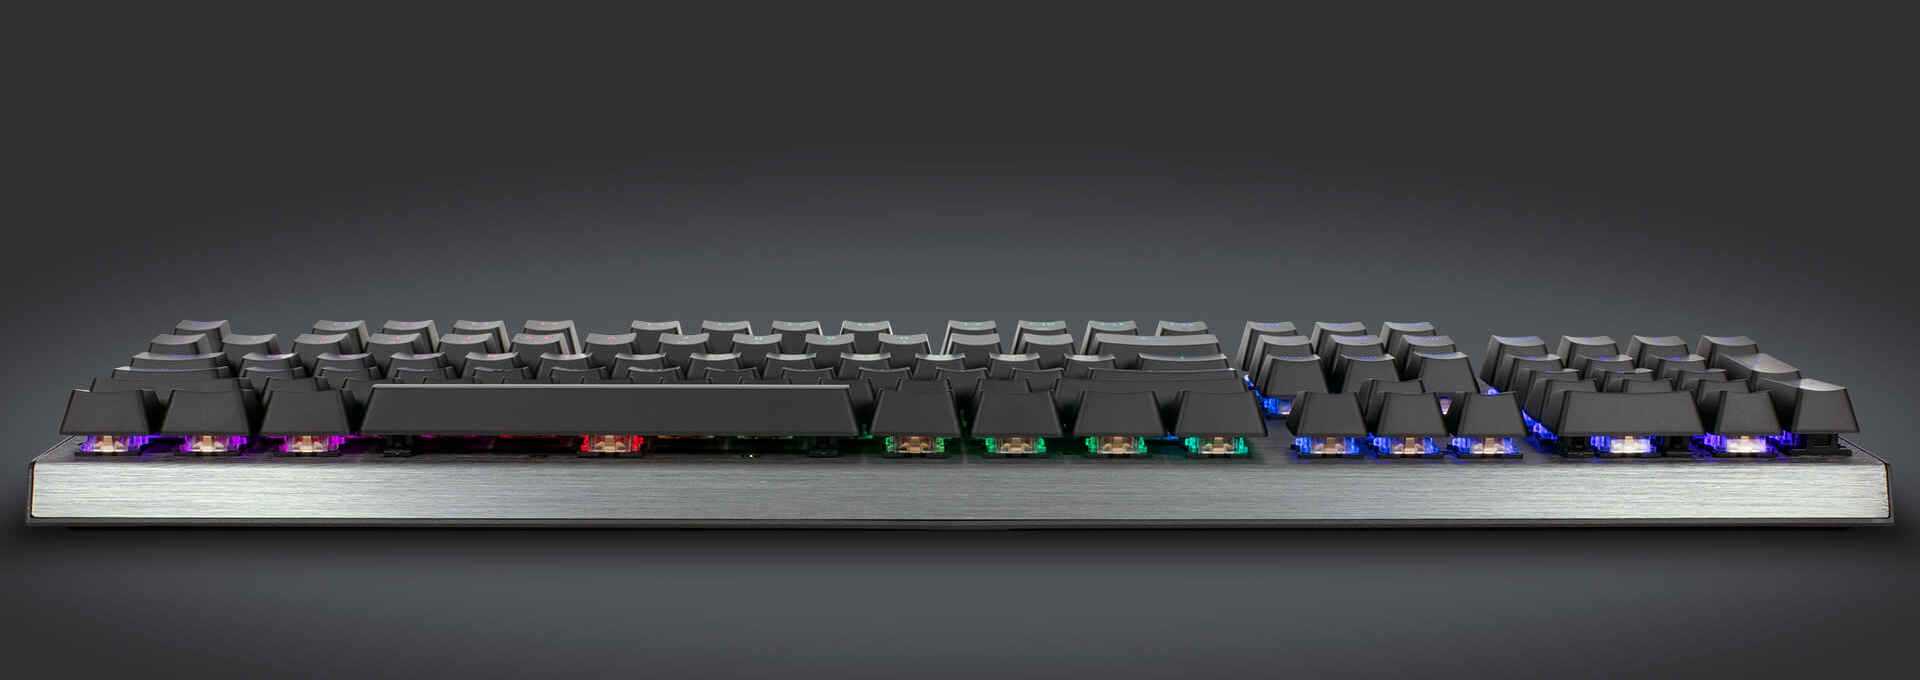 Bàn phím cơ Cooler Master CK350 (USB/RGB/Red switch) sử dụng layout truyền thống